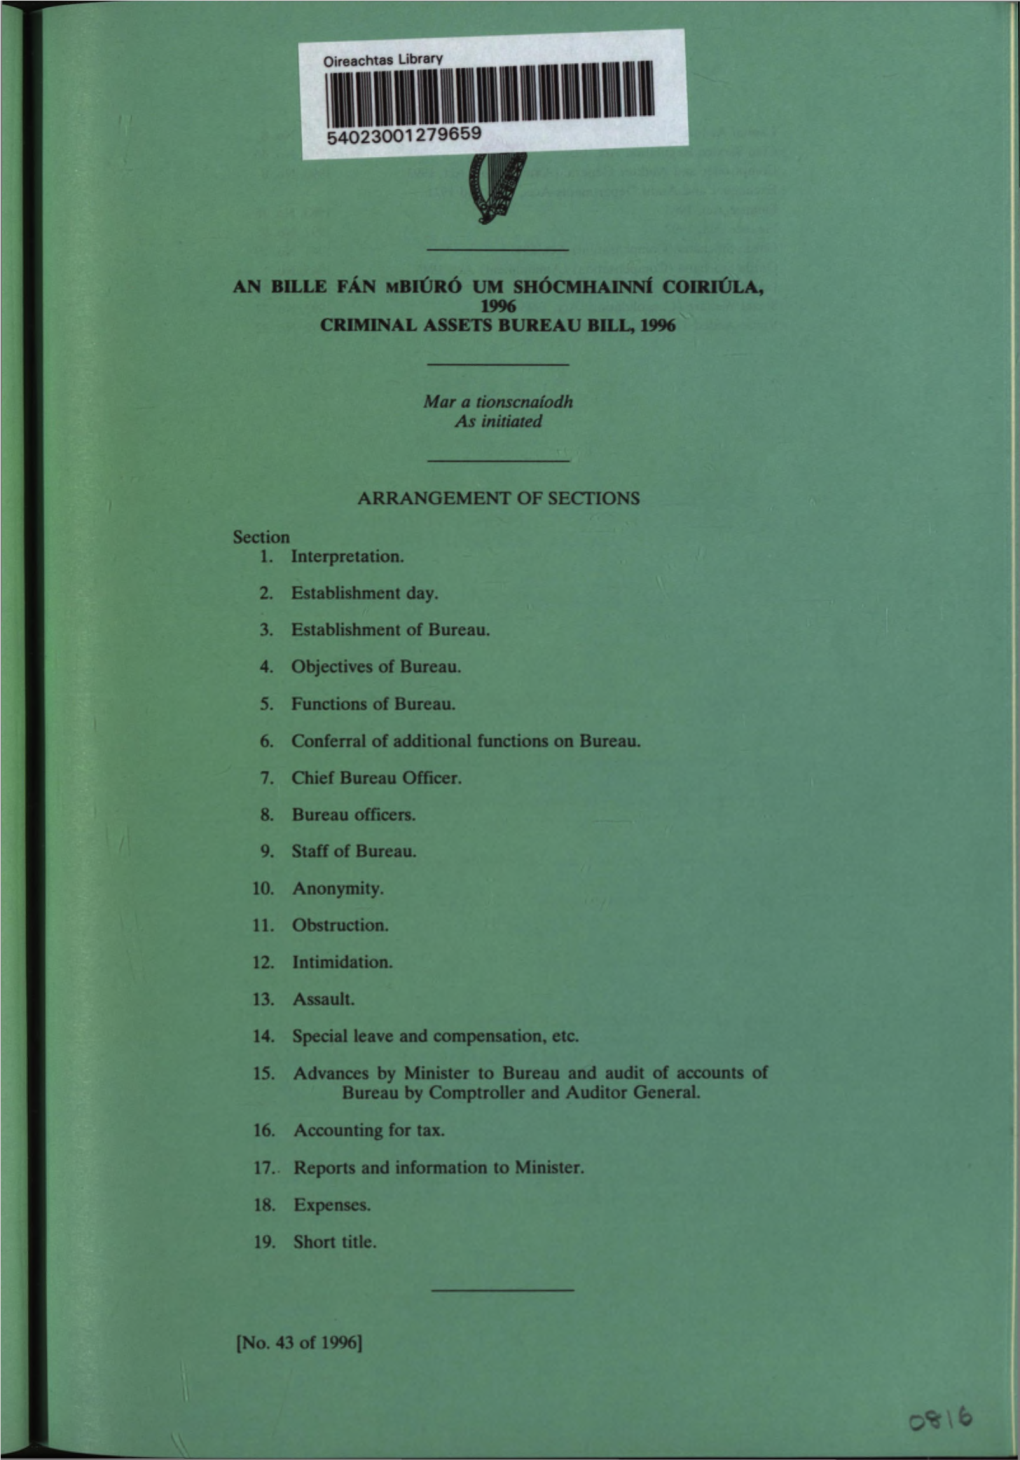 Criminal Assets Bureau Bill, 1996